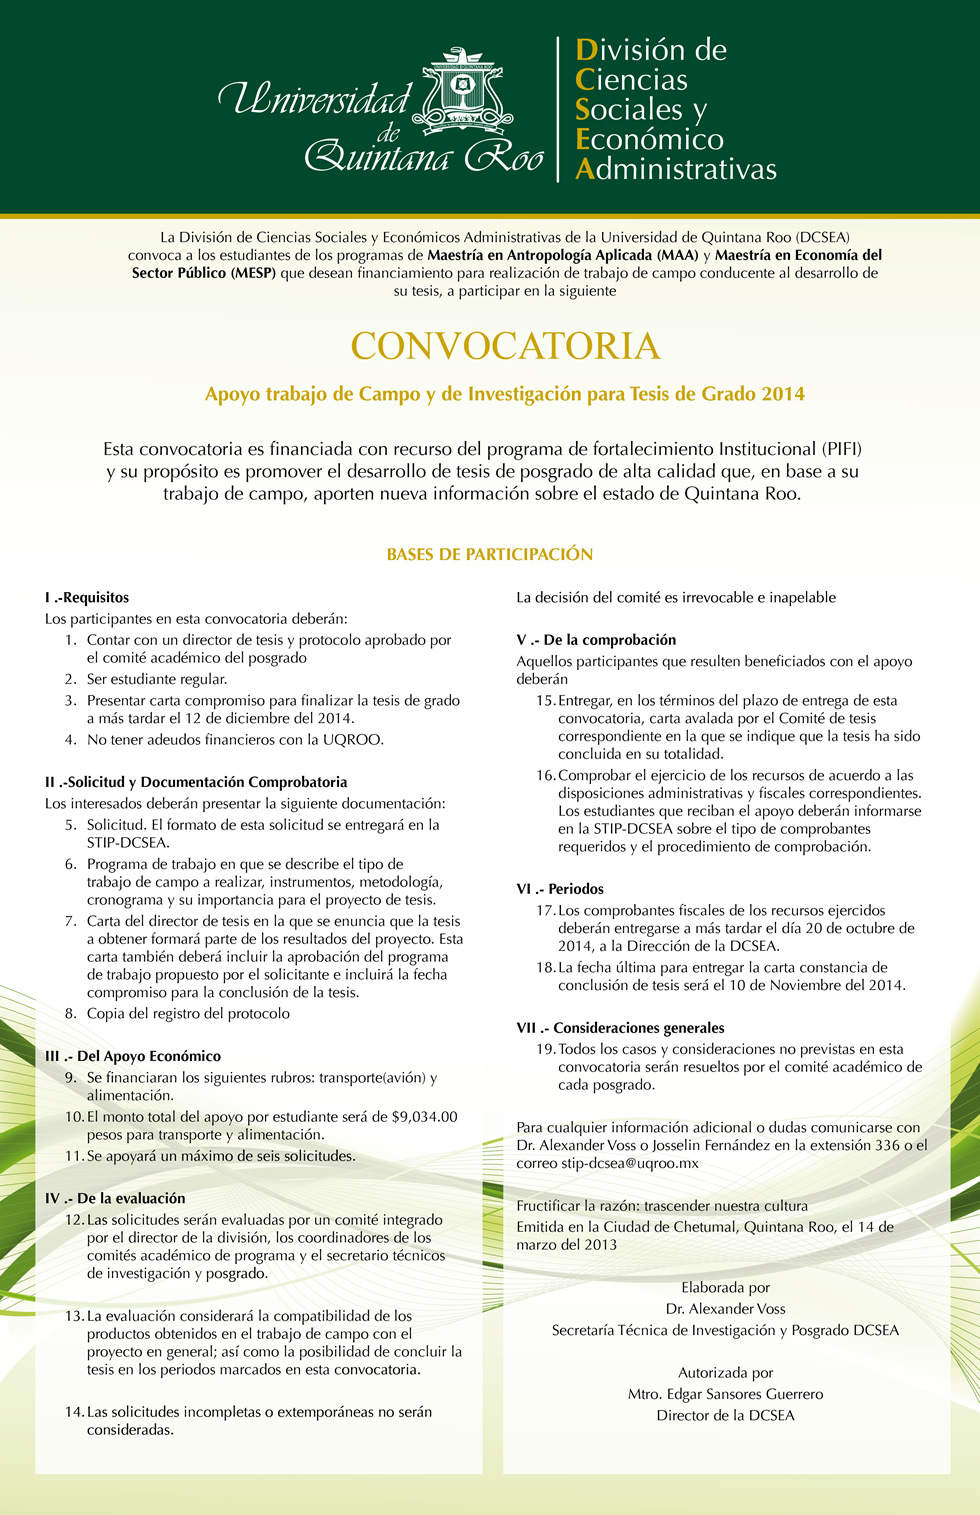 apoyo_a_trabajo_de_campo_y_de_investigacion_para_tesis_de_grado_2014-1.jpg